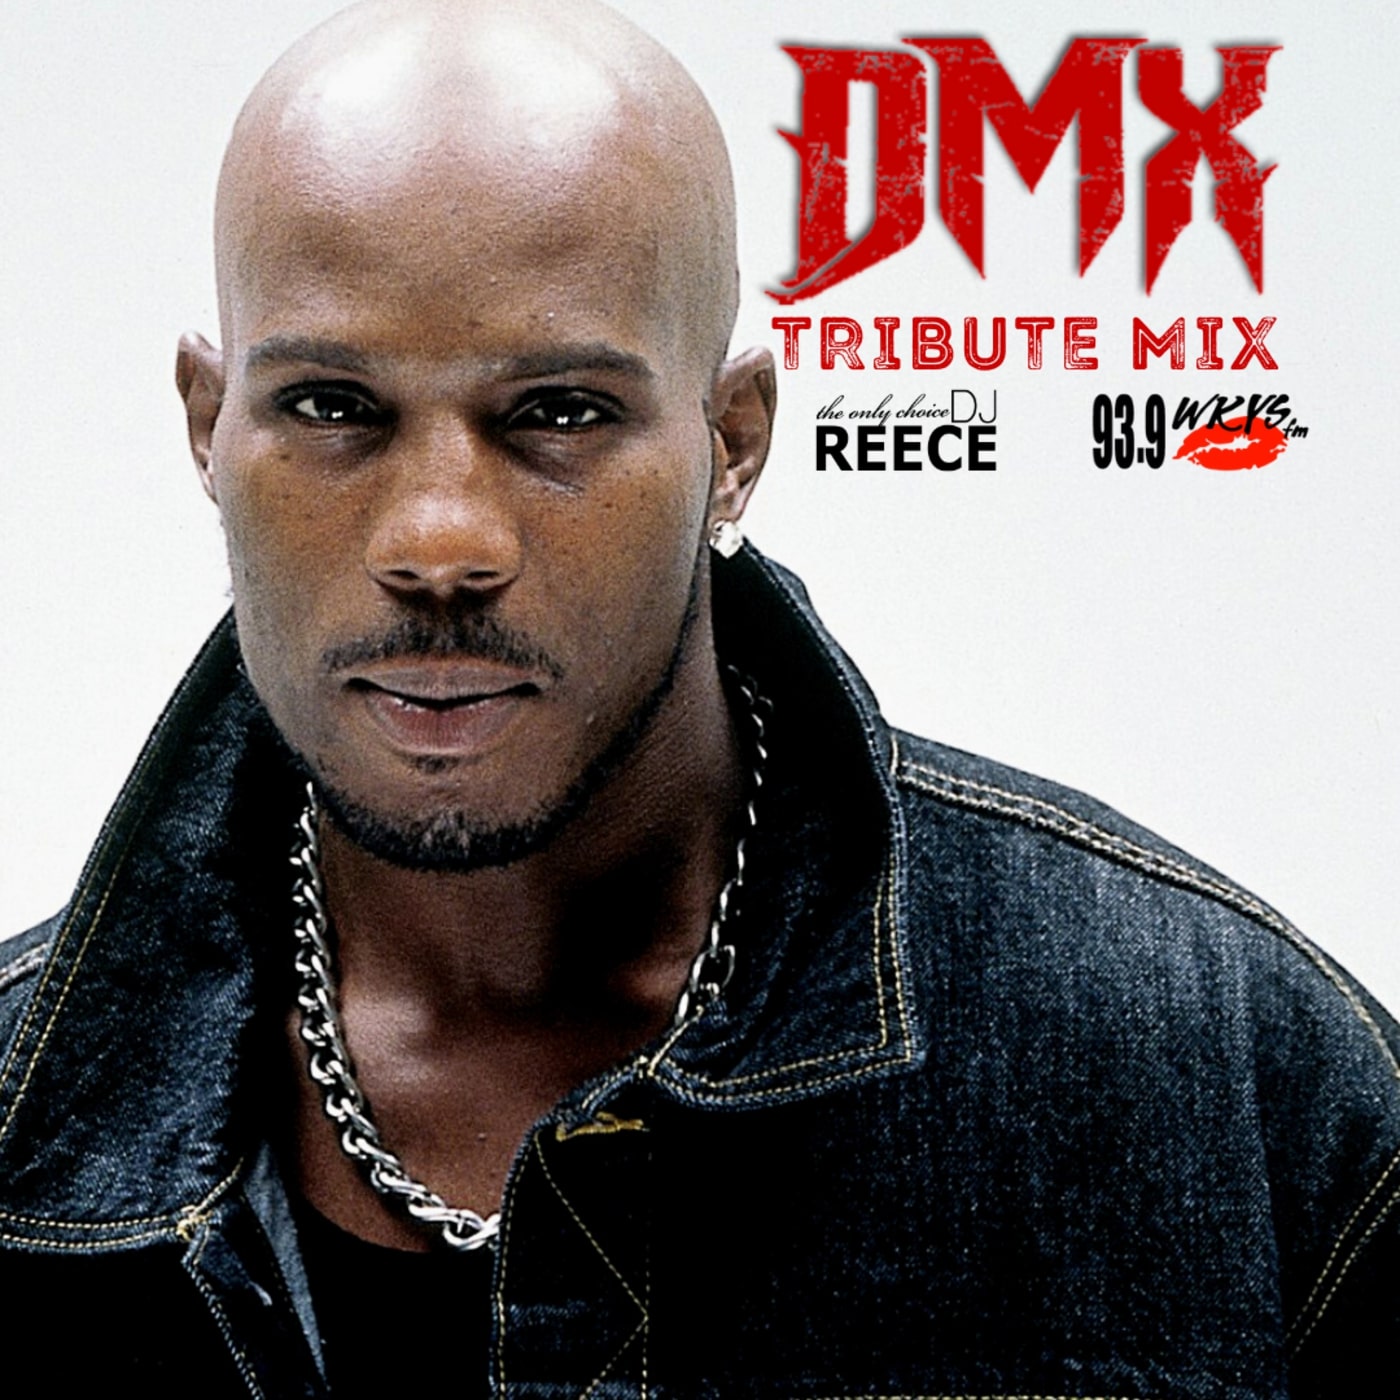 DMX Tribute on 93.9 WKYS-FM (No Talking)